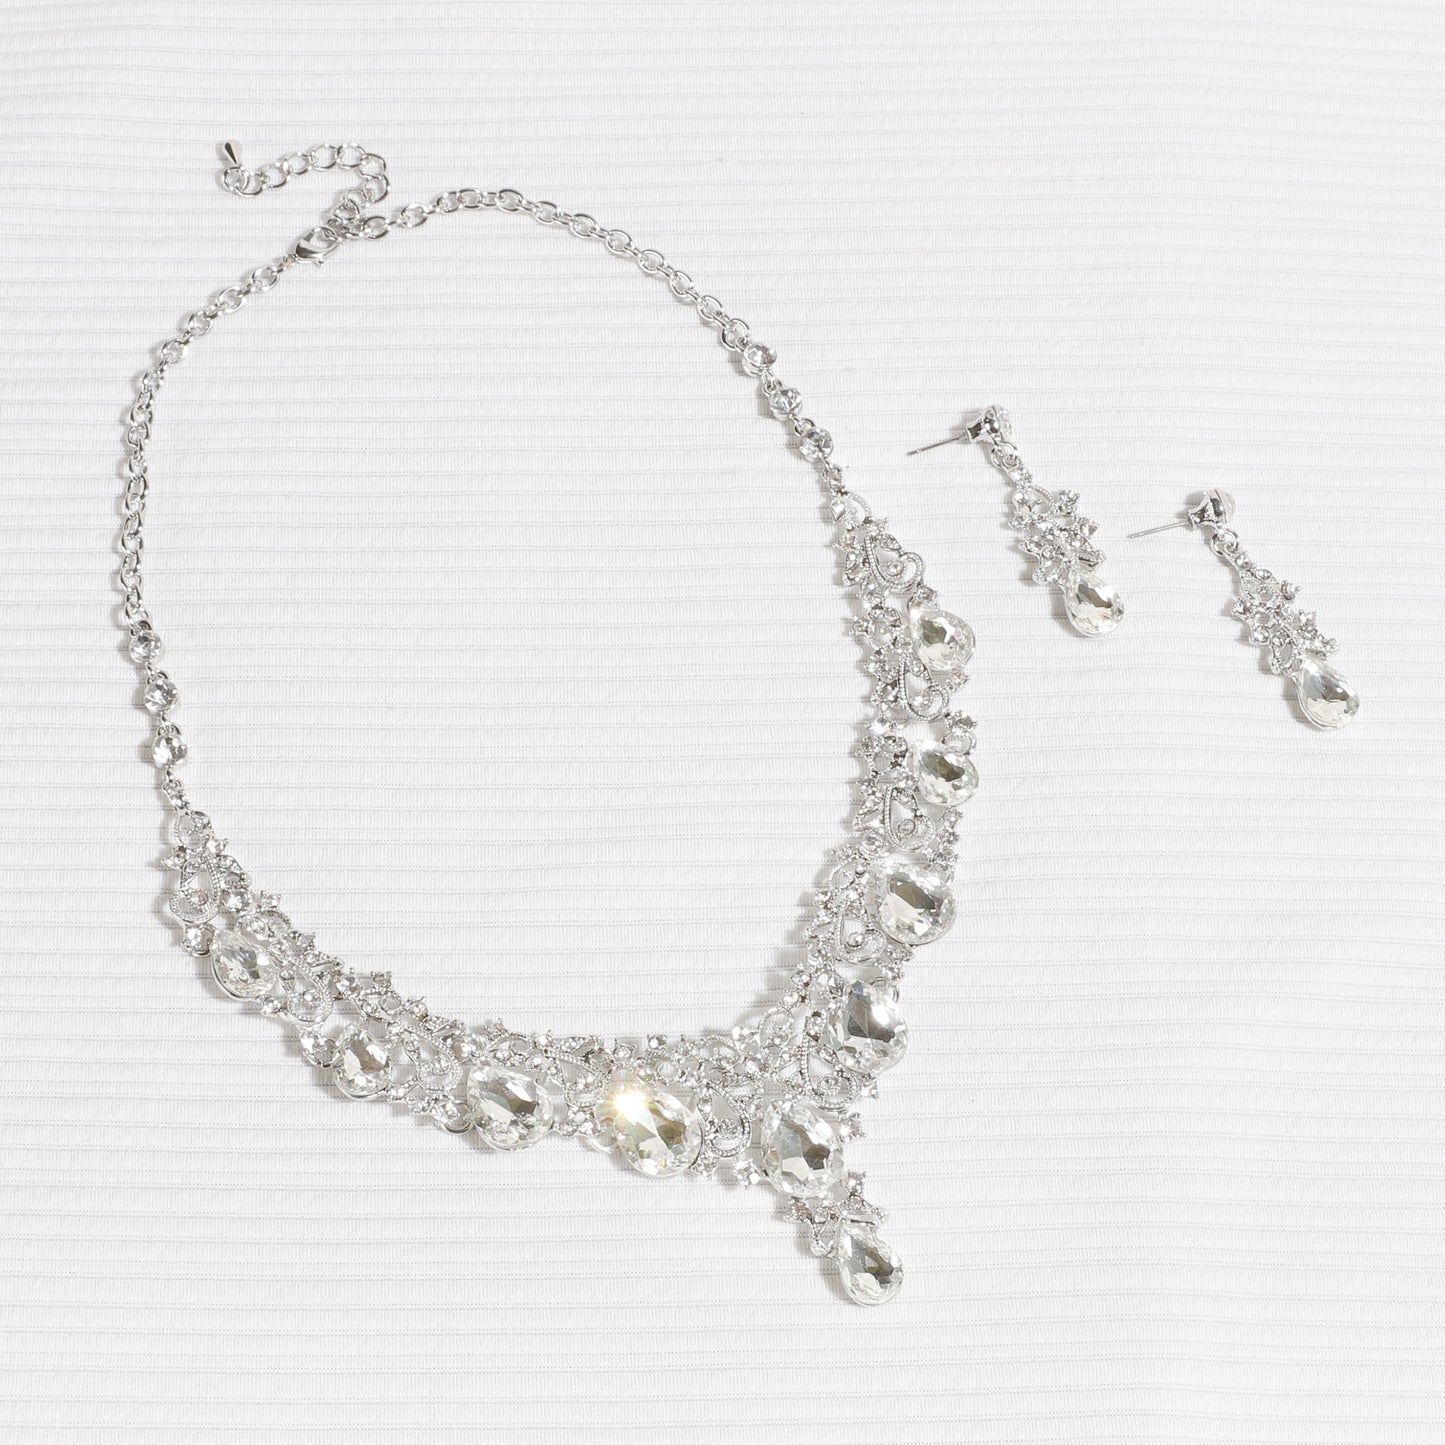 Amalfi Rhinestone Vine Necklace & Earring Set